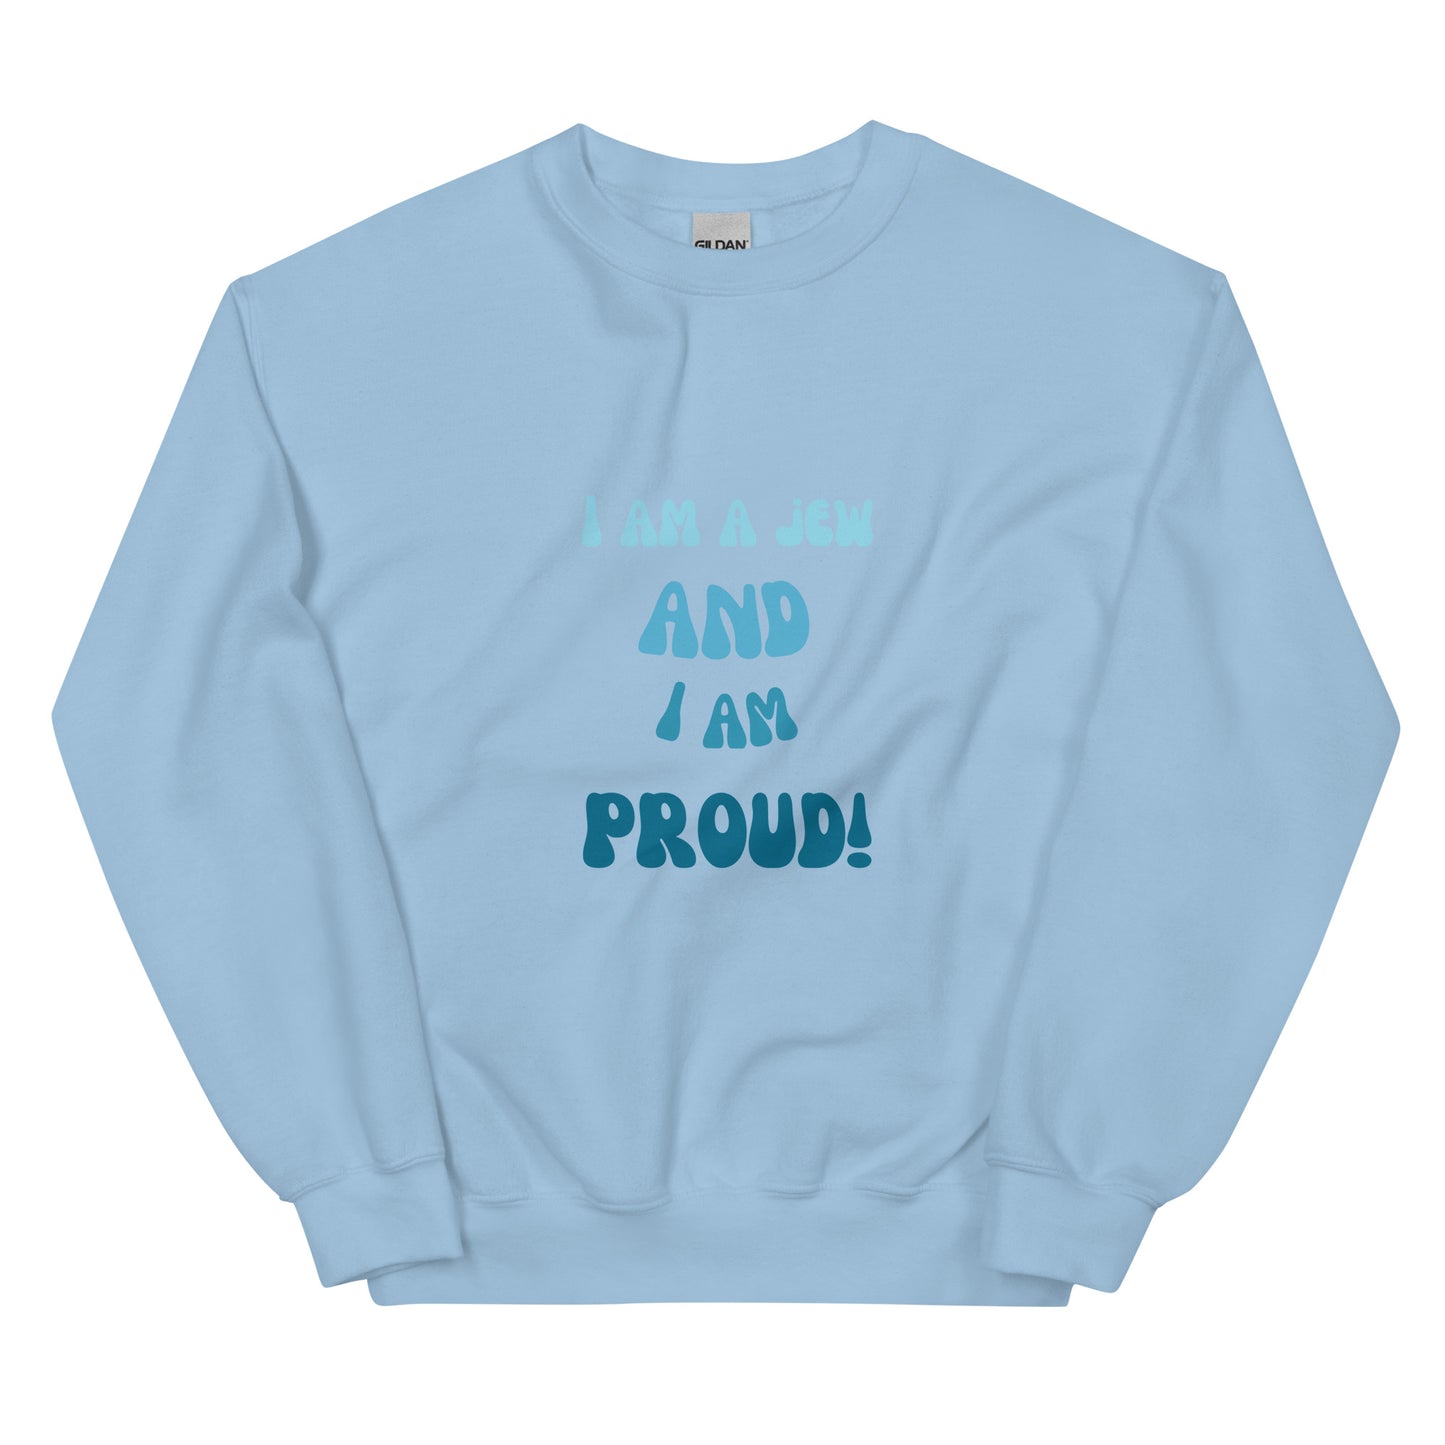 I'm a jew and i'm proud - Unisex Sweatshirt (10 colors)